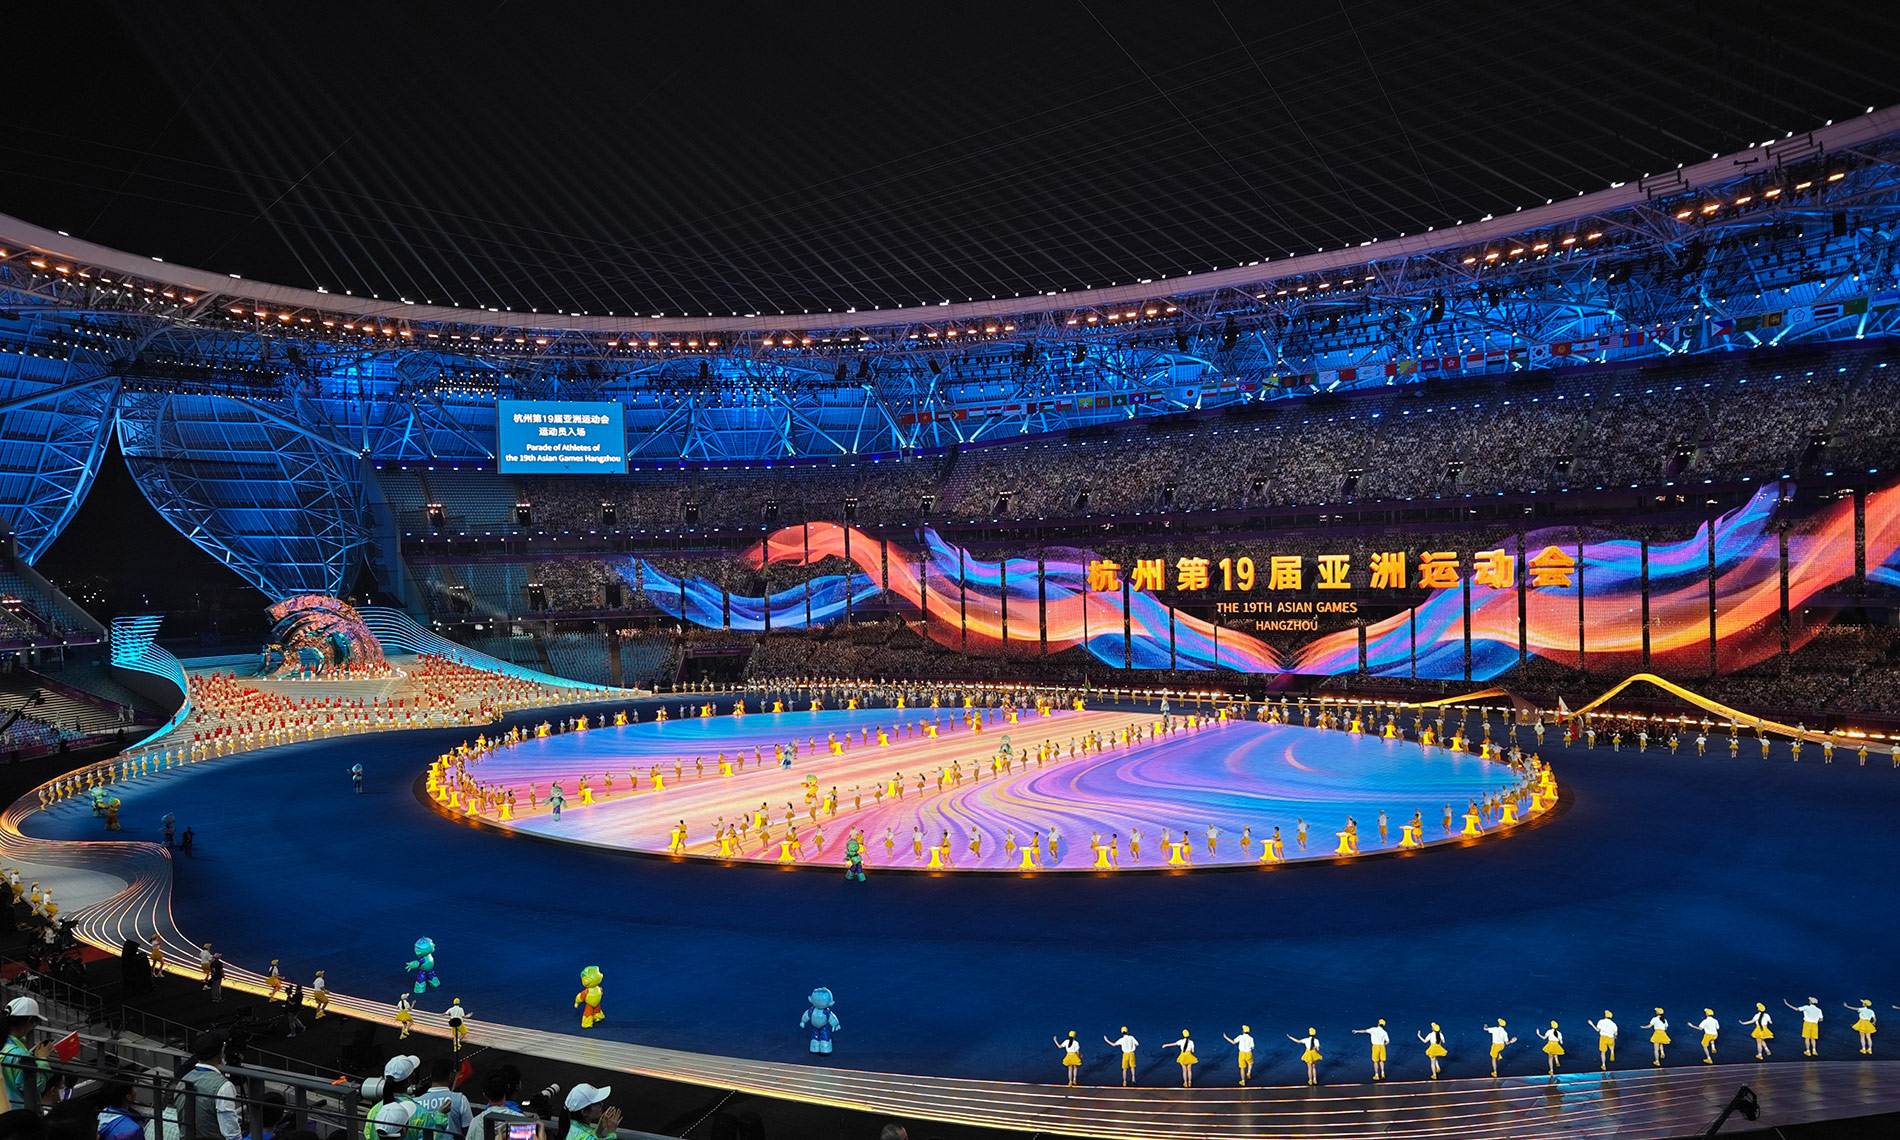 ឥទ្ធិពលរបស់ vivo ក្នុងពិធីសម្ពោធព្រឹត្តិការណ៍កីឡា Asian Games លើកទី 19 នៅទីក្រុង Hangzhou